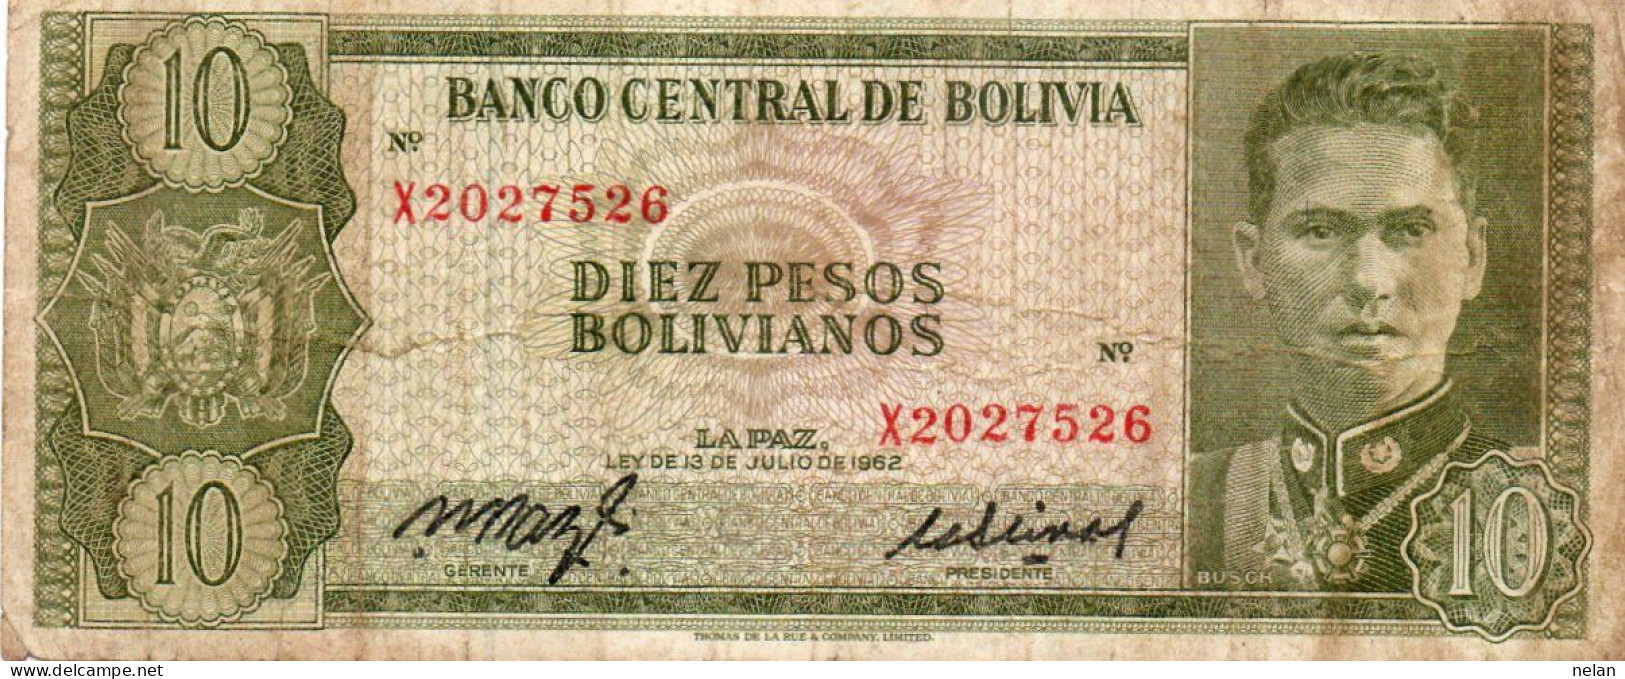 BOLIVIA 10 PESOS BOLIVIANOS 1962 - P-154a.16 CIRC. - Bolivien